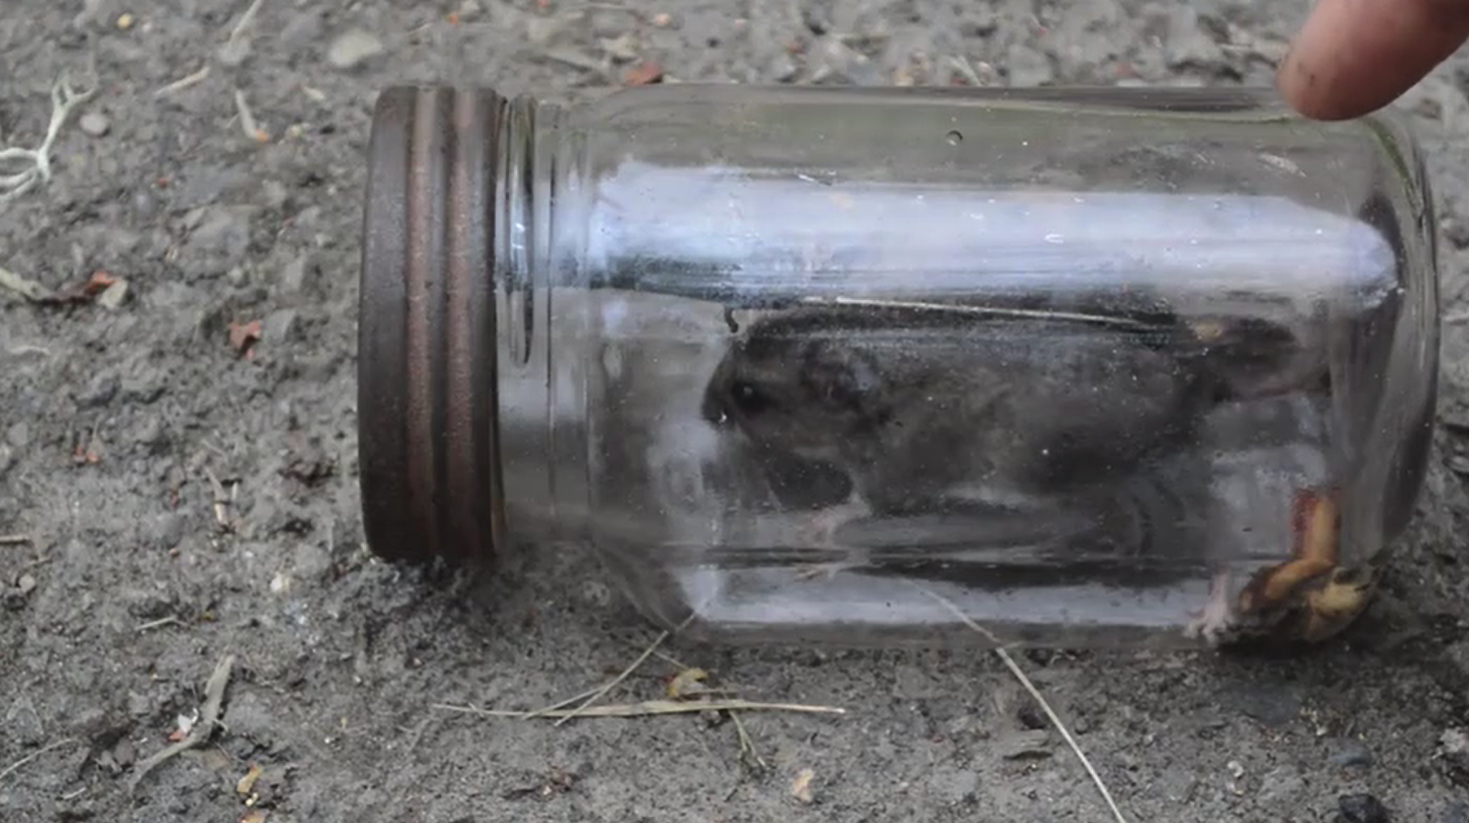 用玻璃瓶改造一个简易捕鼠器,让家里的老鼠有来无回,再也不用烦心了!